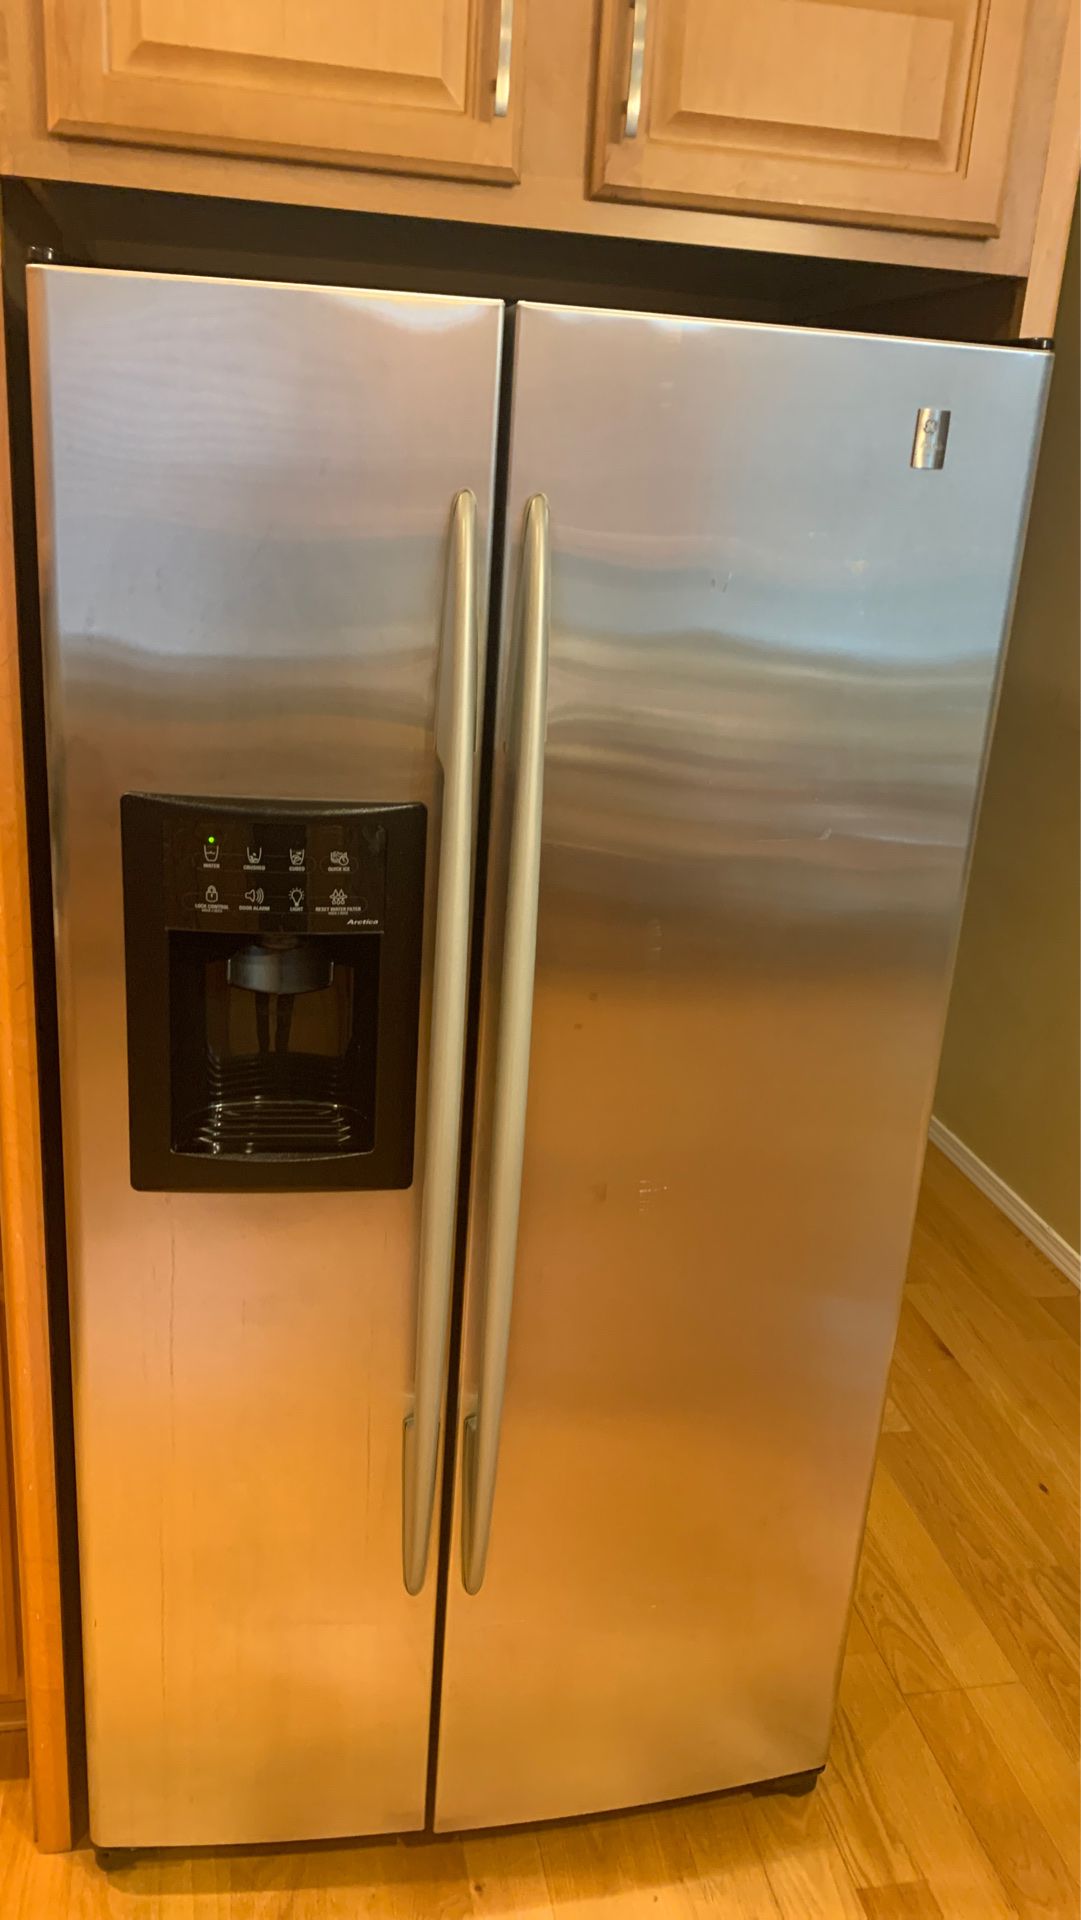 GE double door fridge - works great